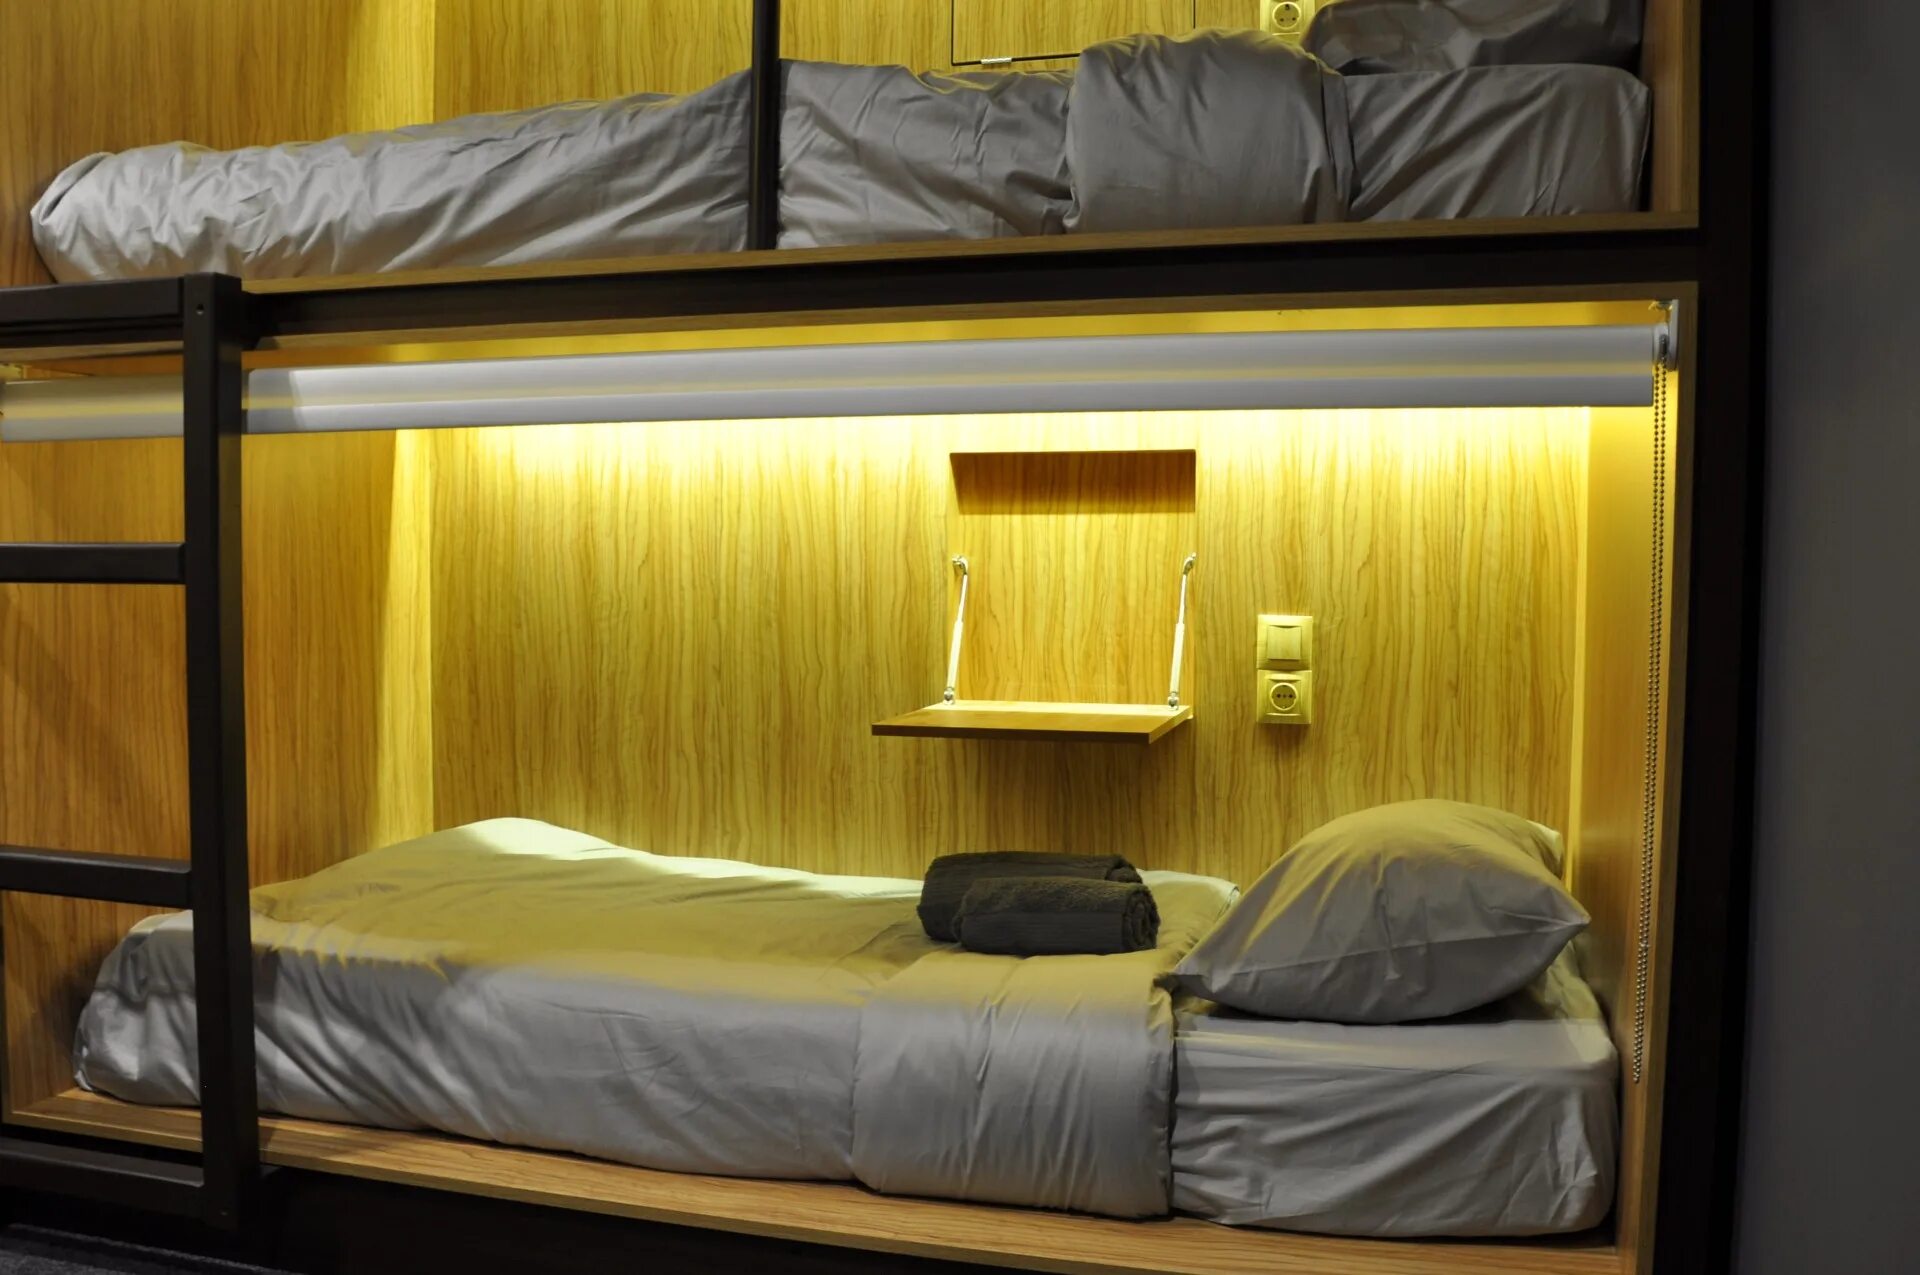 Кровати для хостела. Капсулы для хостела. Капсульные кровати для хостела. Кровати капсулы для хостела.